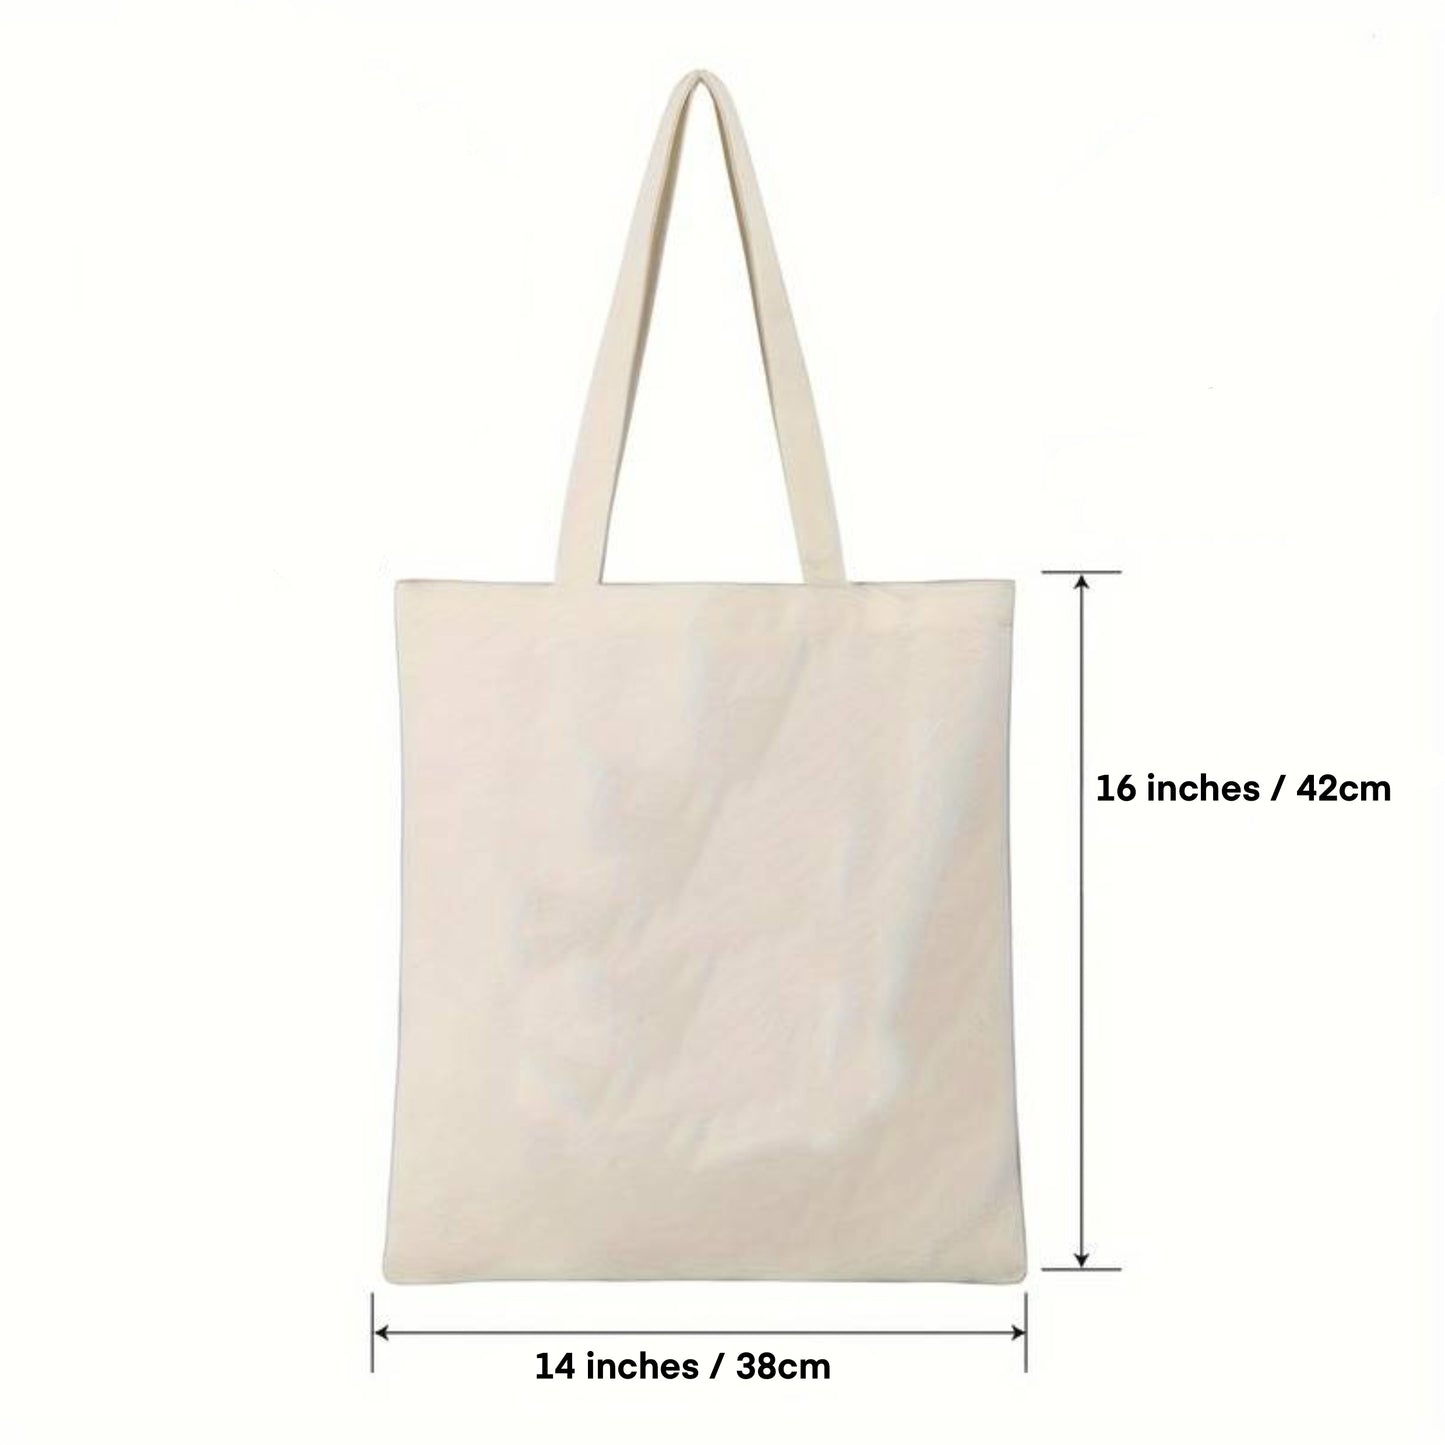 Un deux trois cat tote bag | Eco friendly Canvas reusable shopping Bag